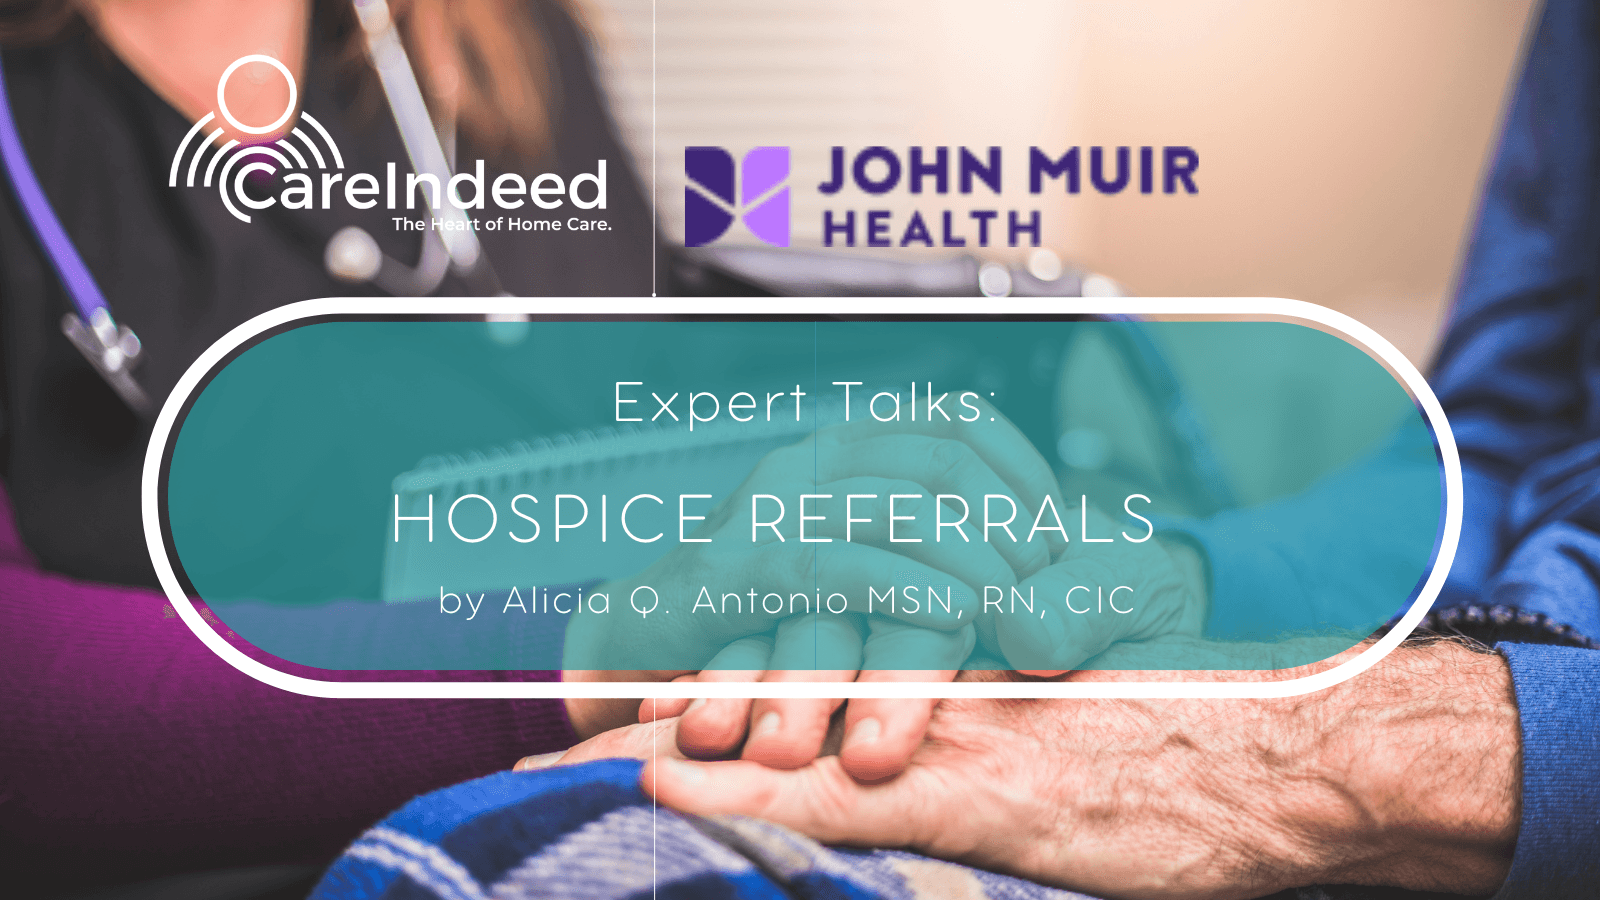  Expert Talks: Hospice Referrals by Alicia Antonio, MSN, RN, CIC